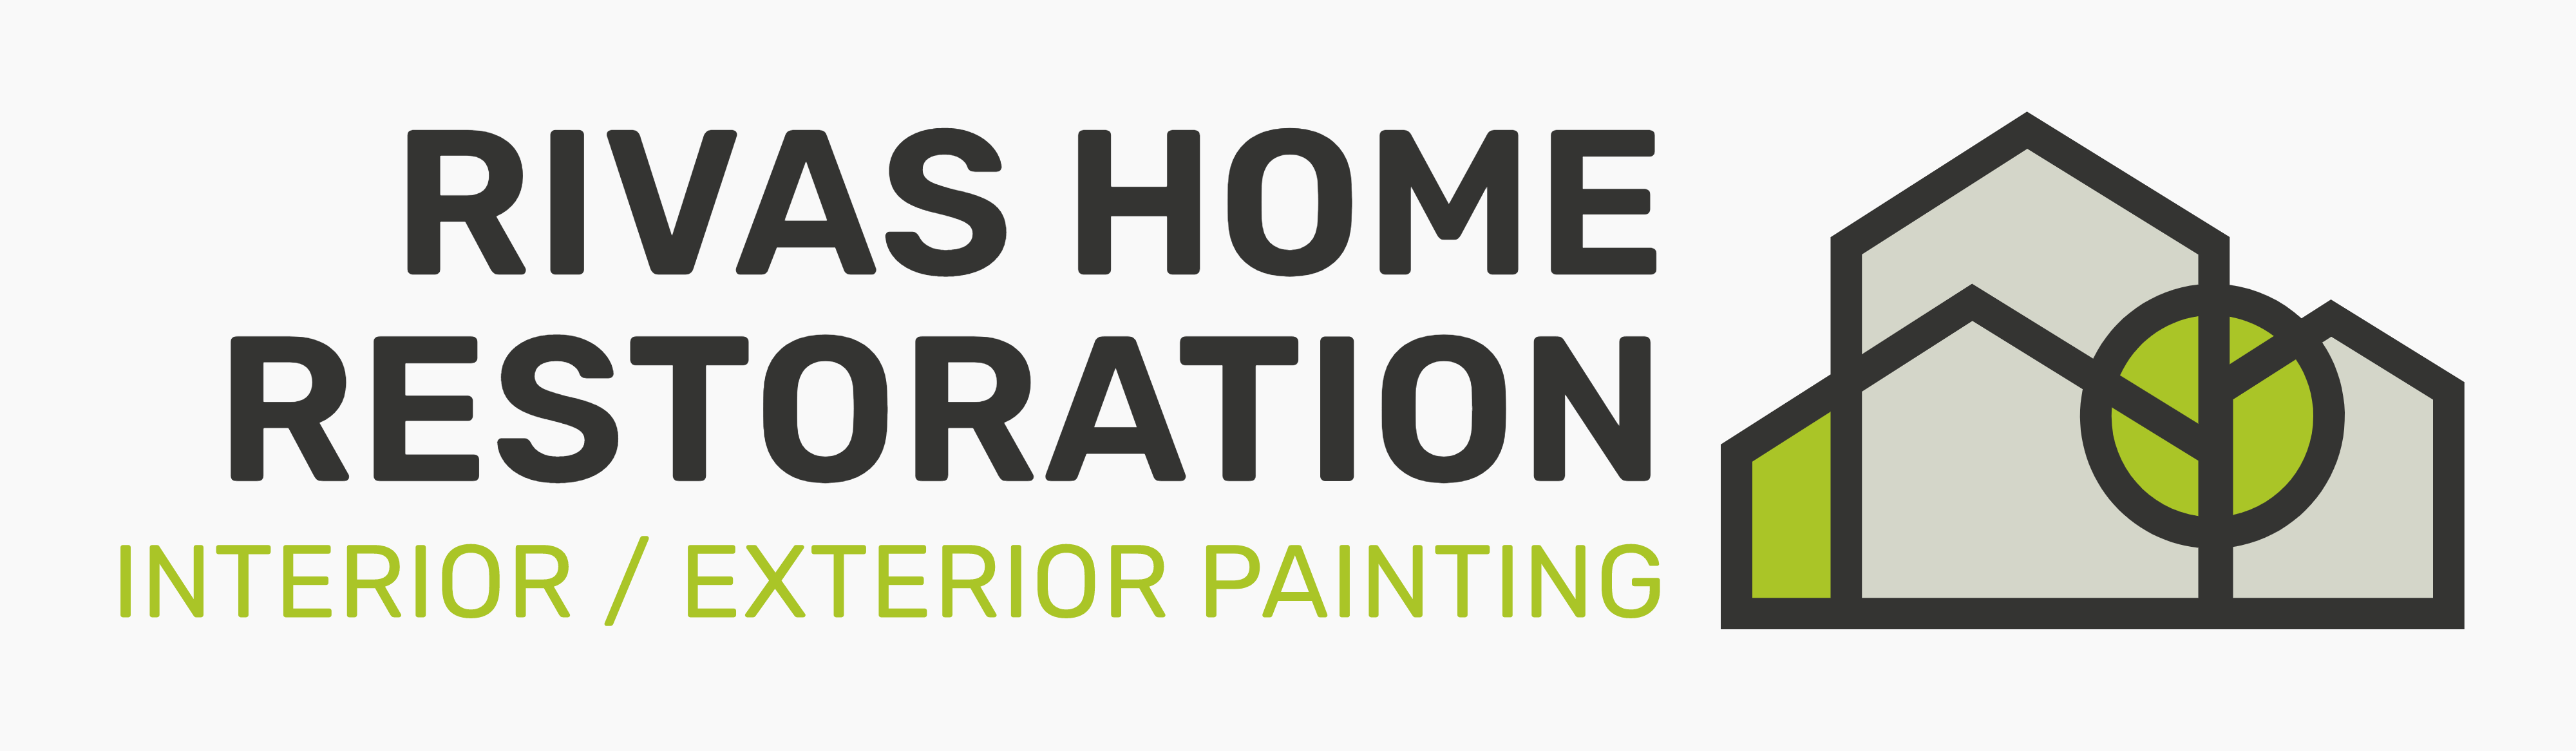 Rivas Home Restoration Logo